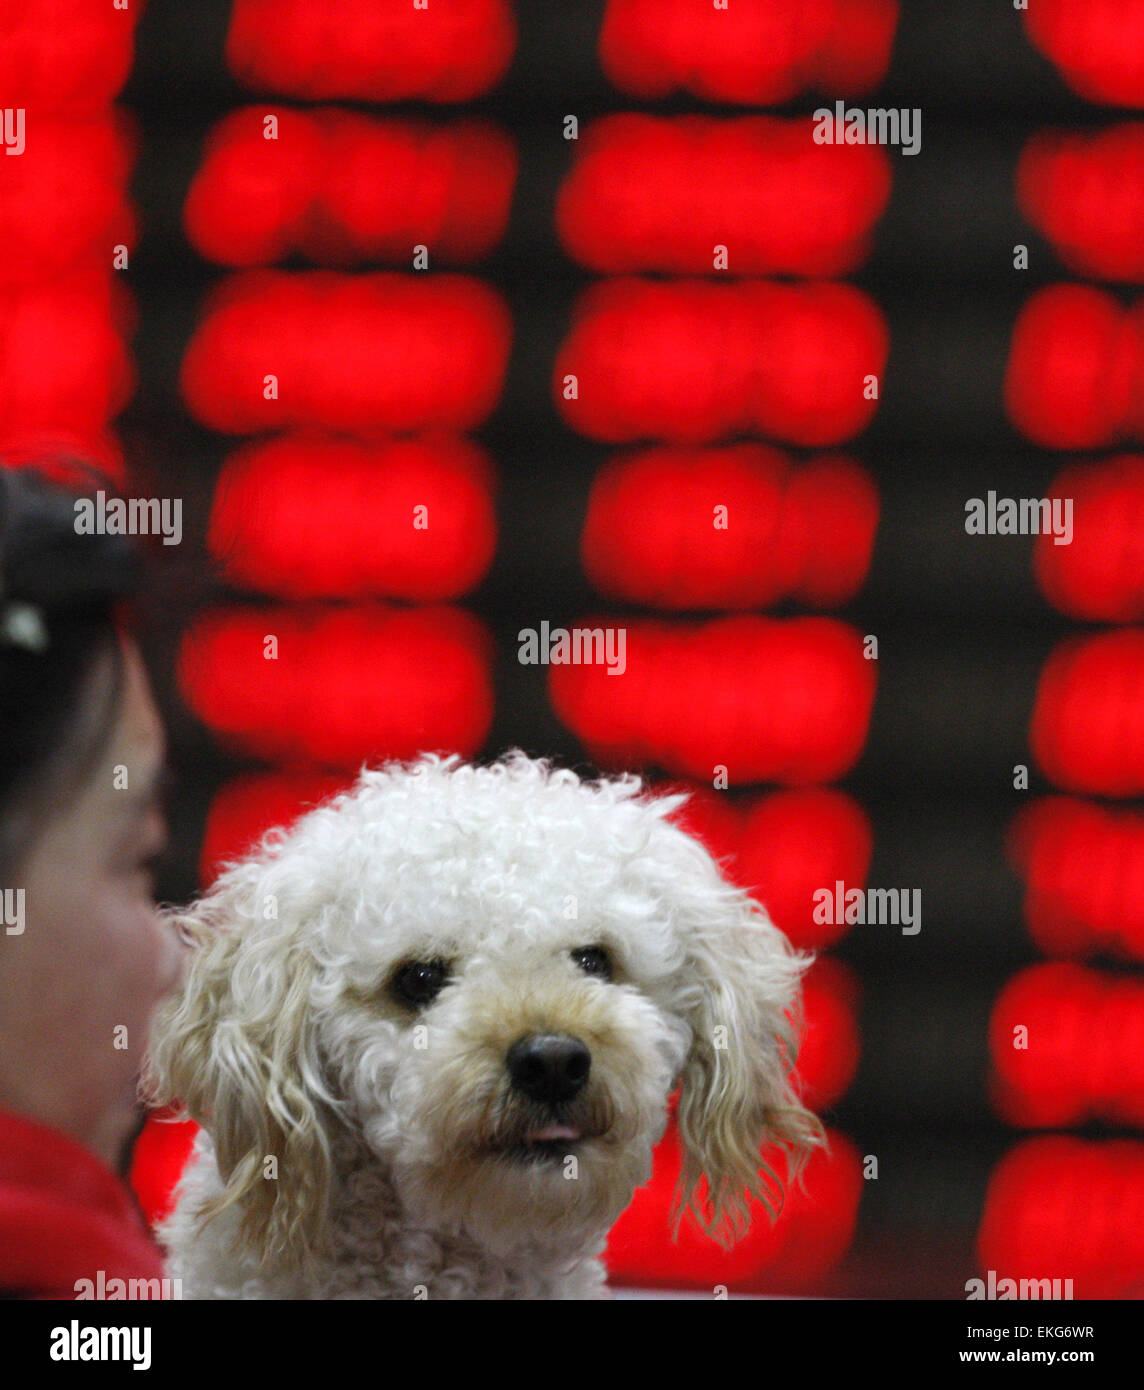 Shanghai, Cina. Decimo Apr, 2015. Un cane è tenuto da una donna orologi eclettica monitor presso una borsa in Huaibei , provincia di Anhui in Cina il 10 aprile 2015. Il Shanghai Composite Index è salito nuovamente sopra il livello di 4.000 ed era pronto per un quinto incremento settimanale. Il composito di Shanghai rose 1,4%, pronti per il più alto vicino a partire da marzo 2008. Il CSI300 indice è aumentato di 1,2 per cento. Per questa settimana, erano impostati per i guadagni di 3,9% e 3,4%, rispettivamente. Credito: Panda occhio/Alamy Live News Foto Stock